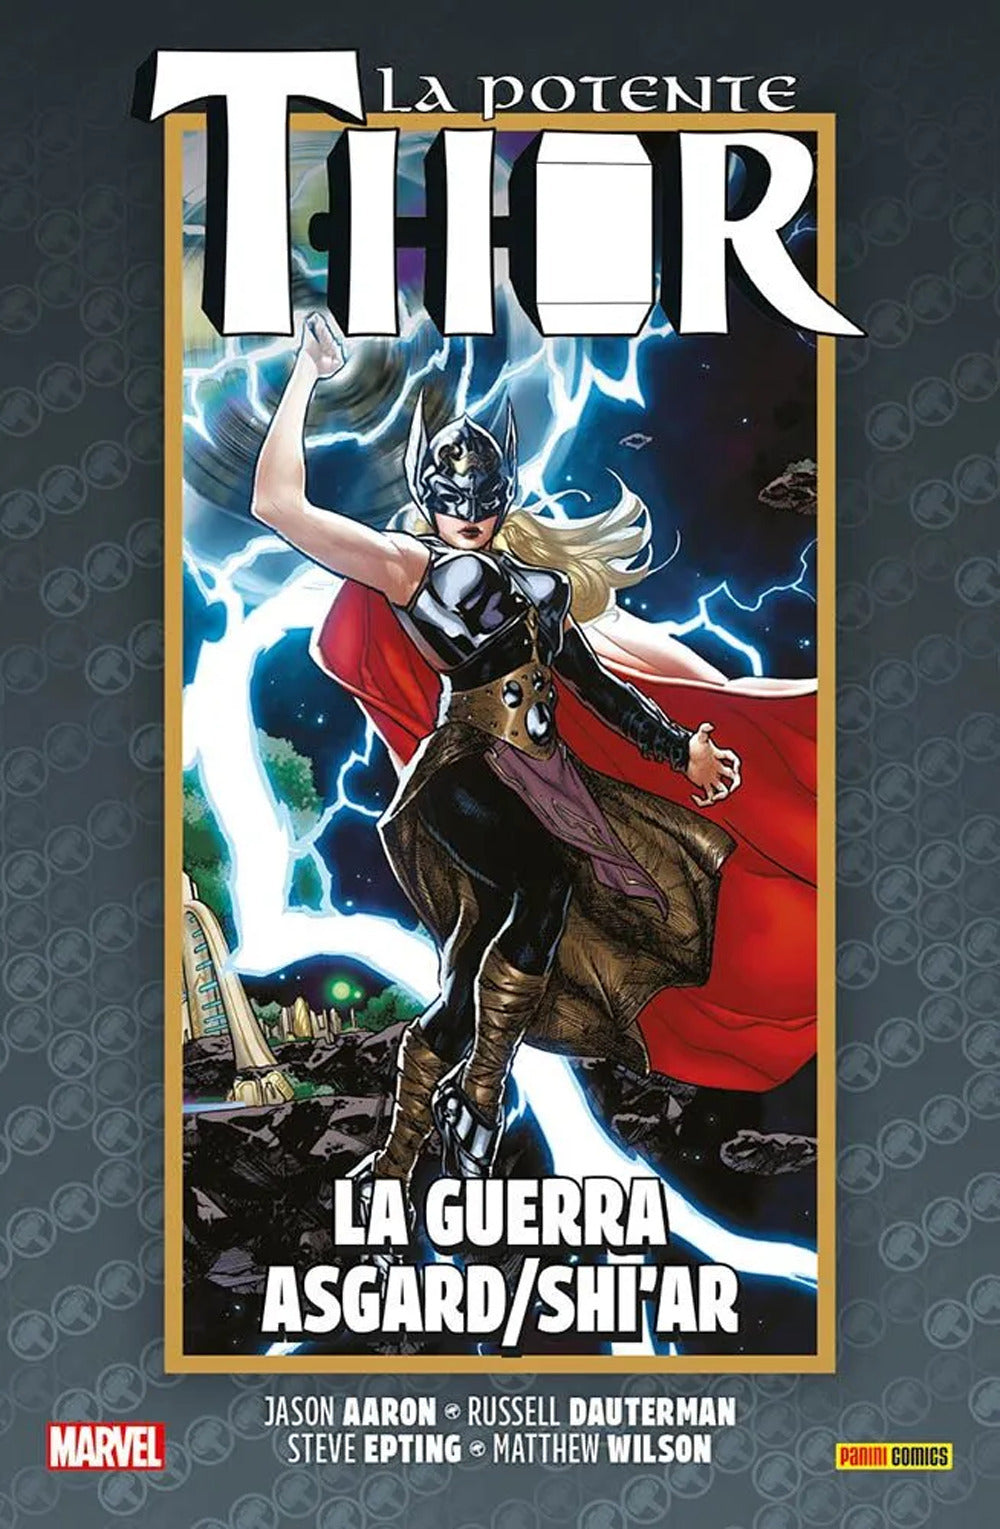 La vita e la morte della potente Thor. Vol. 5: La guerra Asgard/Shi'ar.